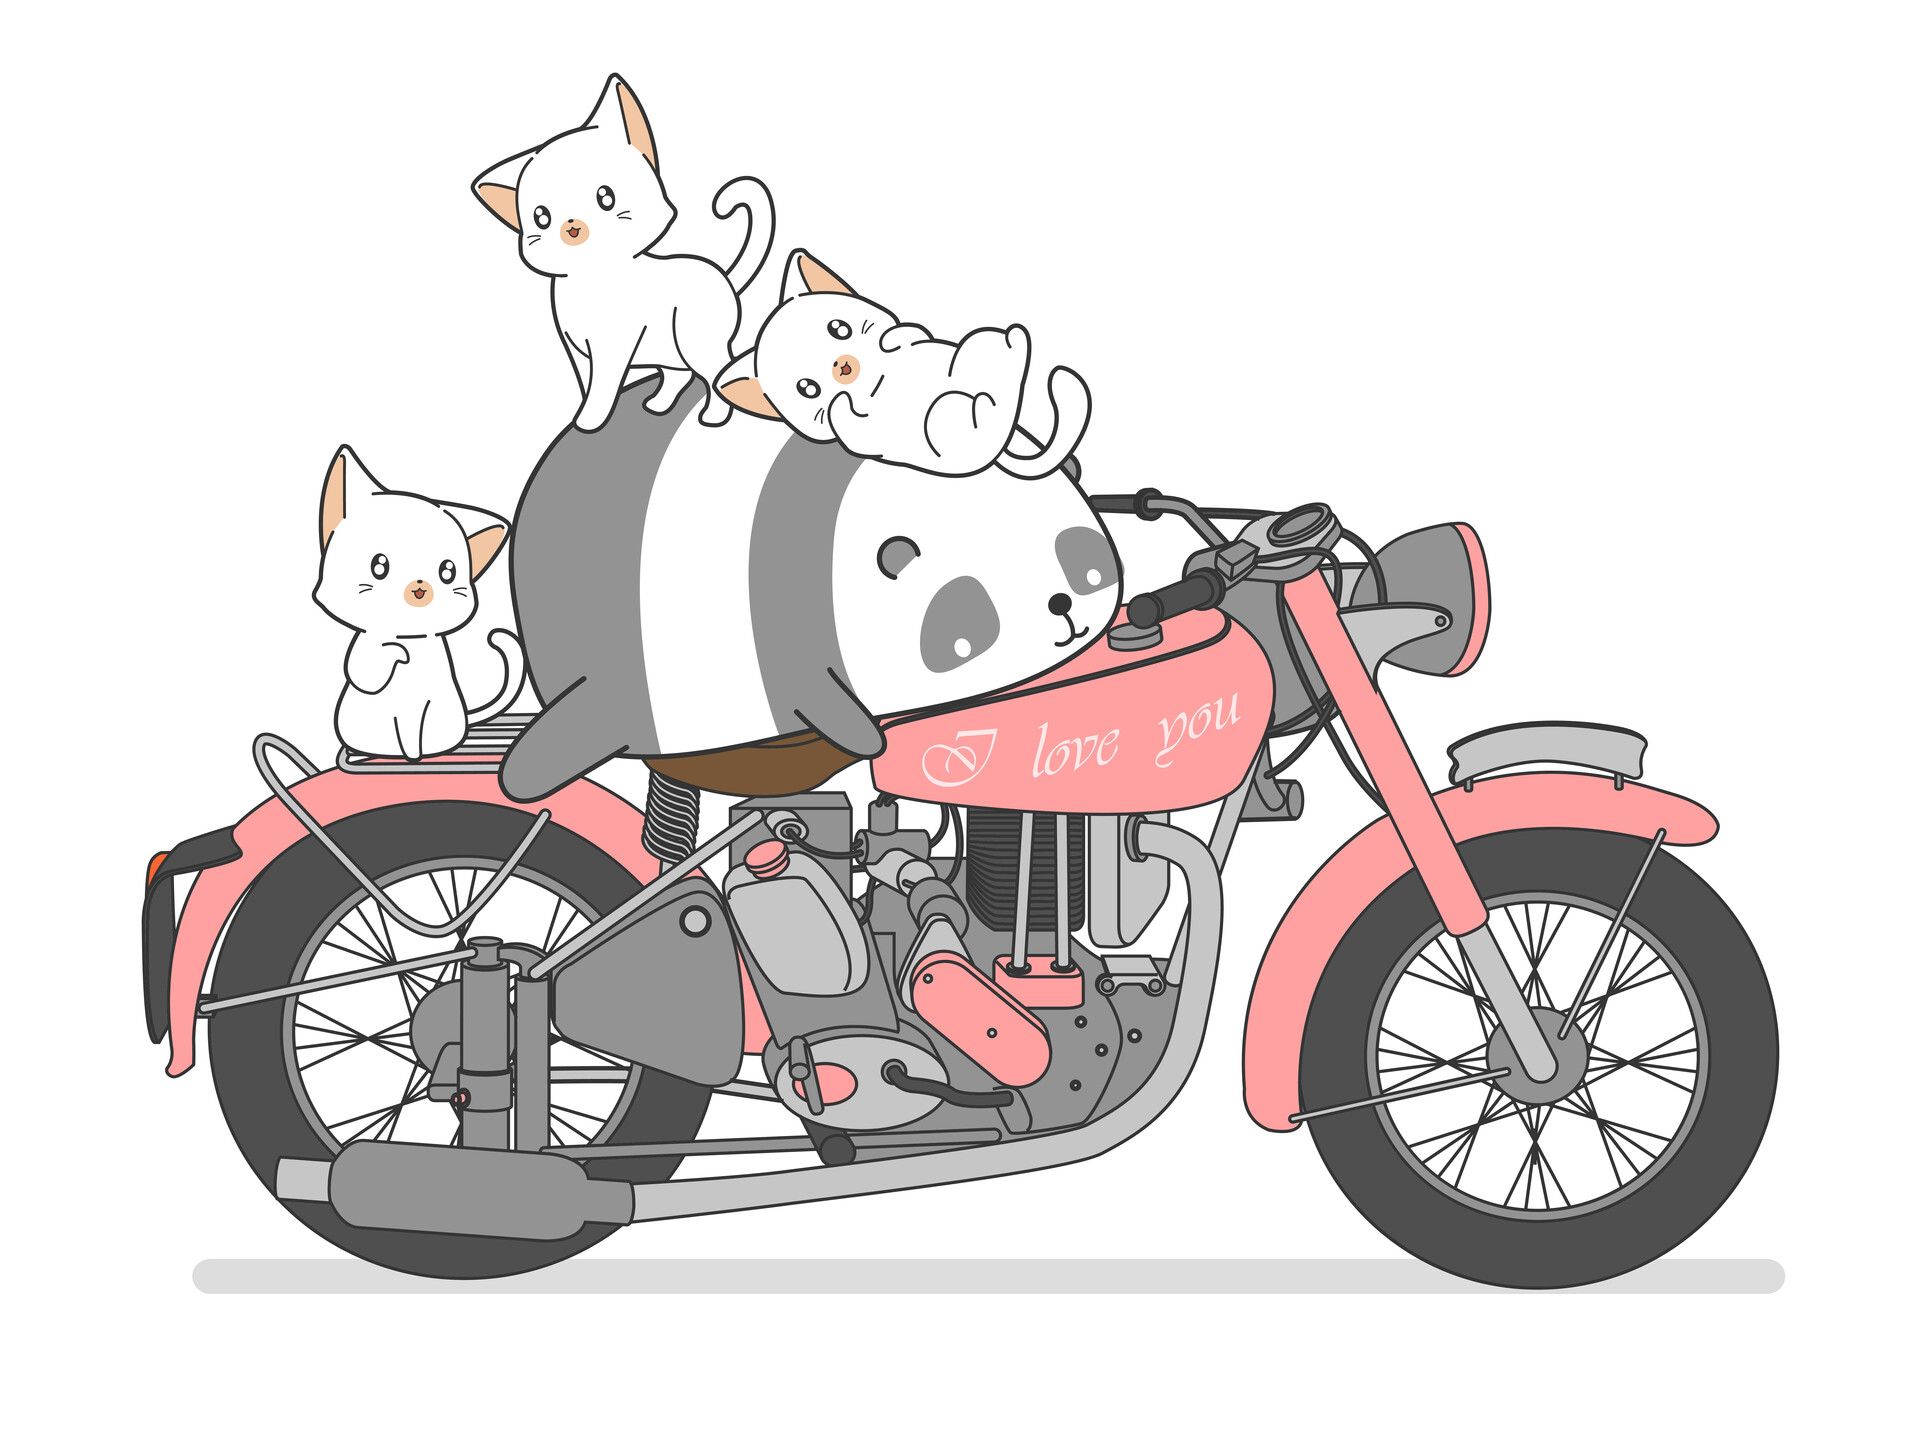 Kawaii panda and cats with motorcycle, Naris Artyuenyong